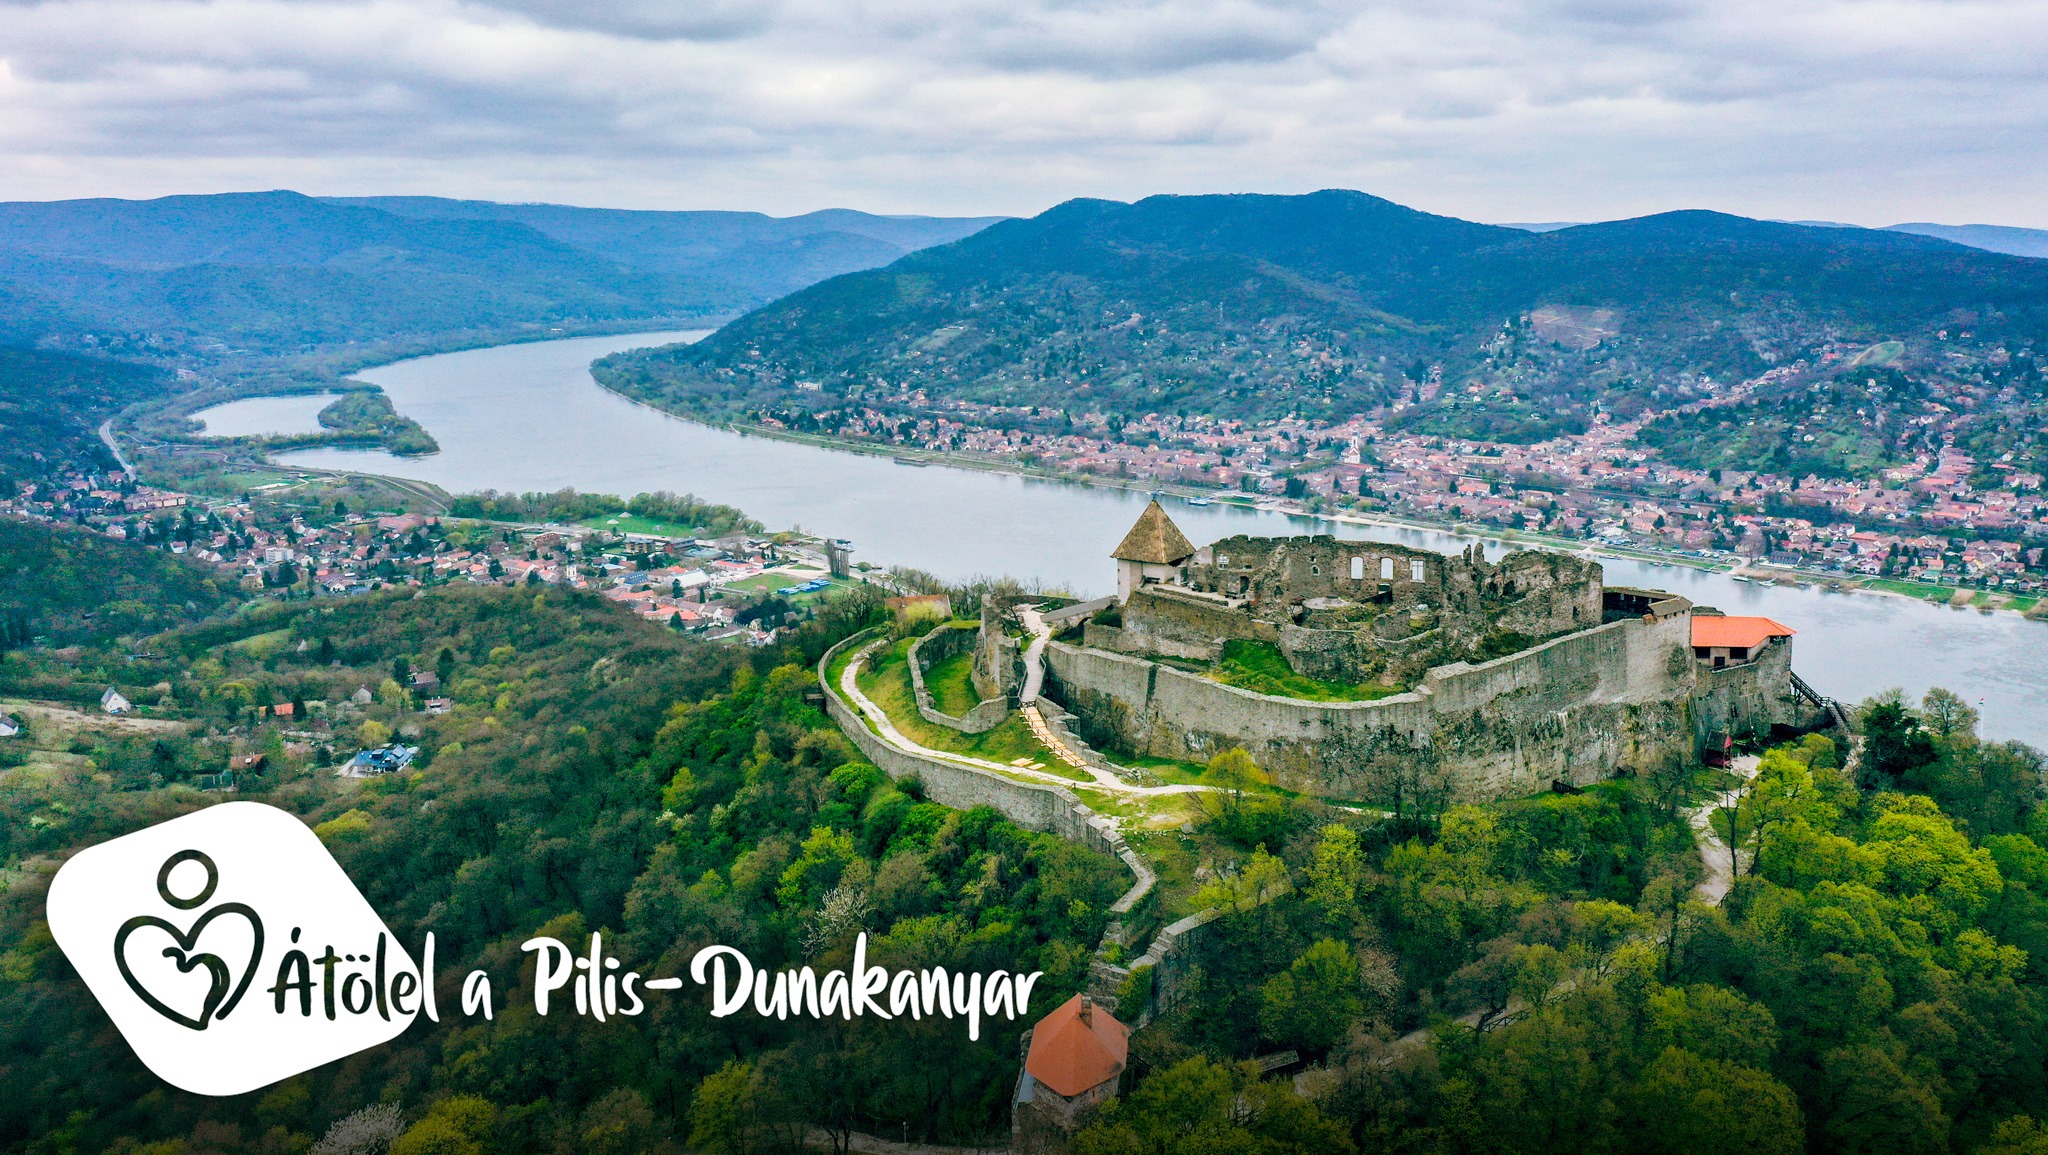 Tíz szervezet írt alá megállapodást a Pilis-Dunakanyar fejlesztési stratégia megvalósításáért